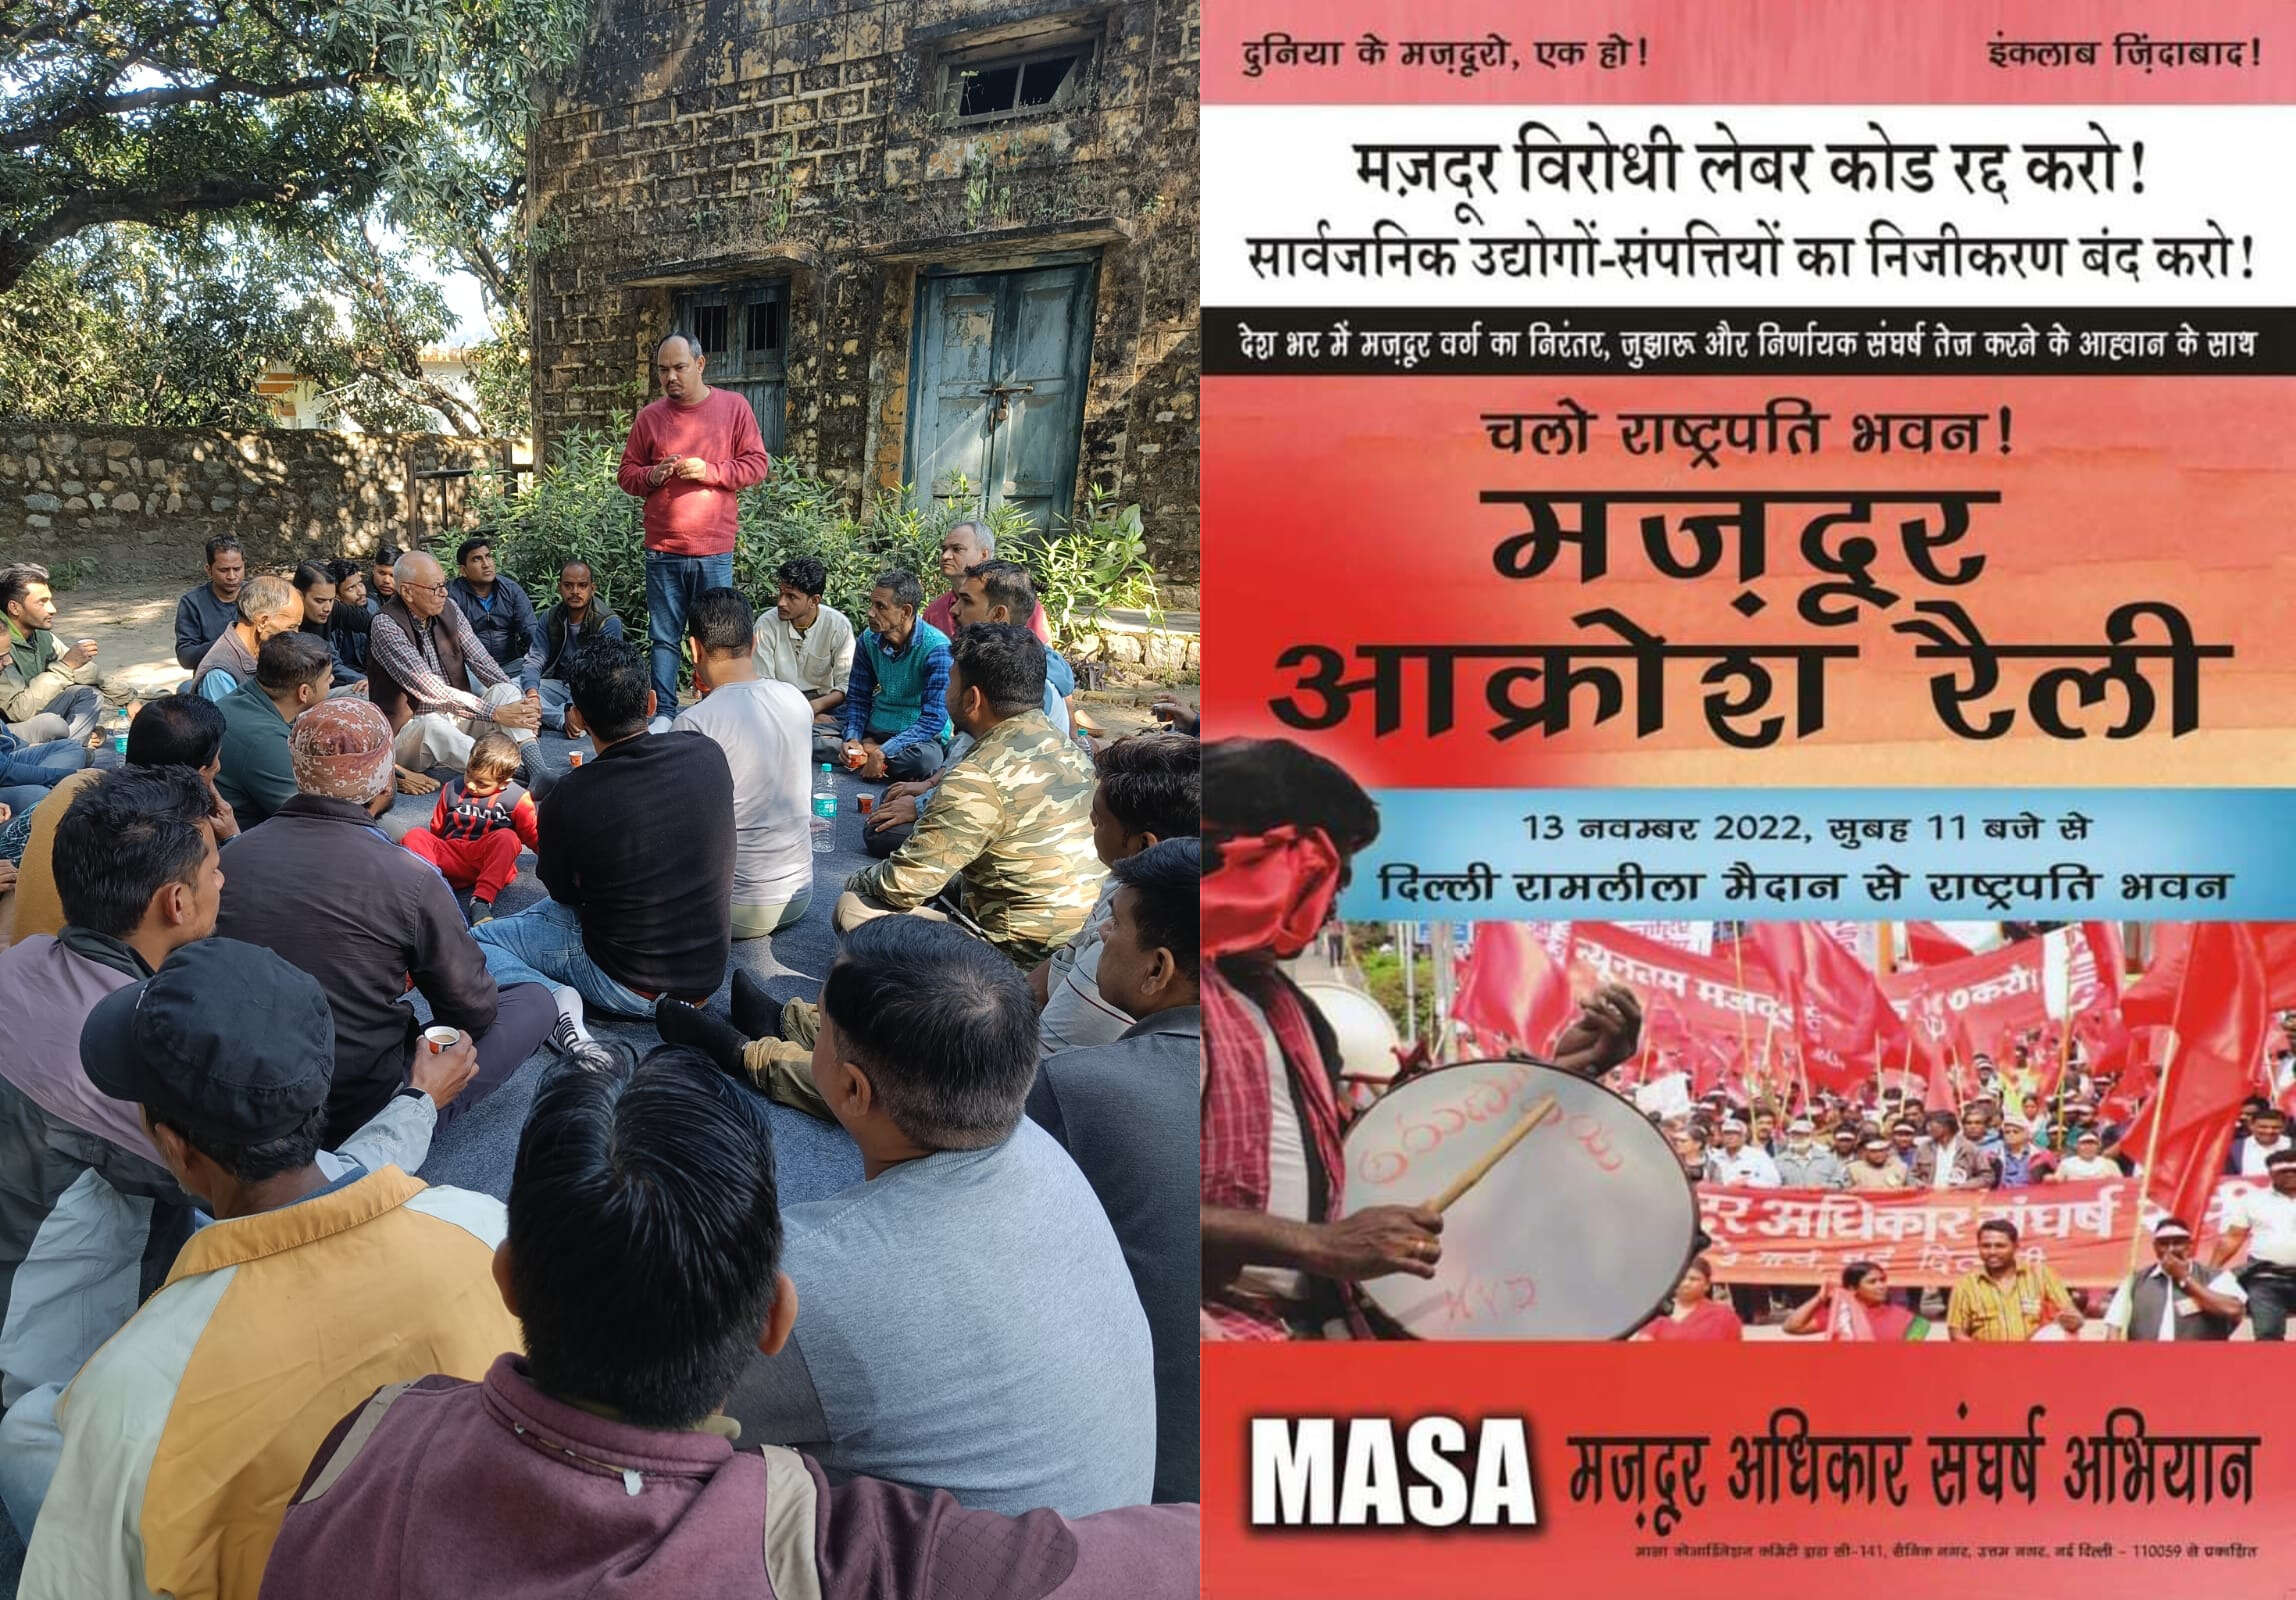 Mazdoor Adhikar Sangharsh Abhiyan:मासा के आह्वान पर देश भर के मज़दूरों का दिल्ली में प्रदर्शन कल, श्रम कानूनों के विरोध में होगा जमावाड़ा, उत्तराखंड के कई संगठन भी होंगे शामिल